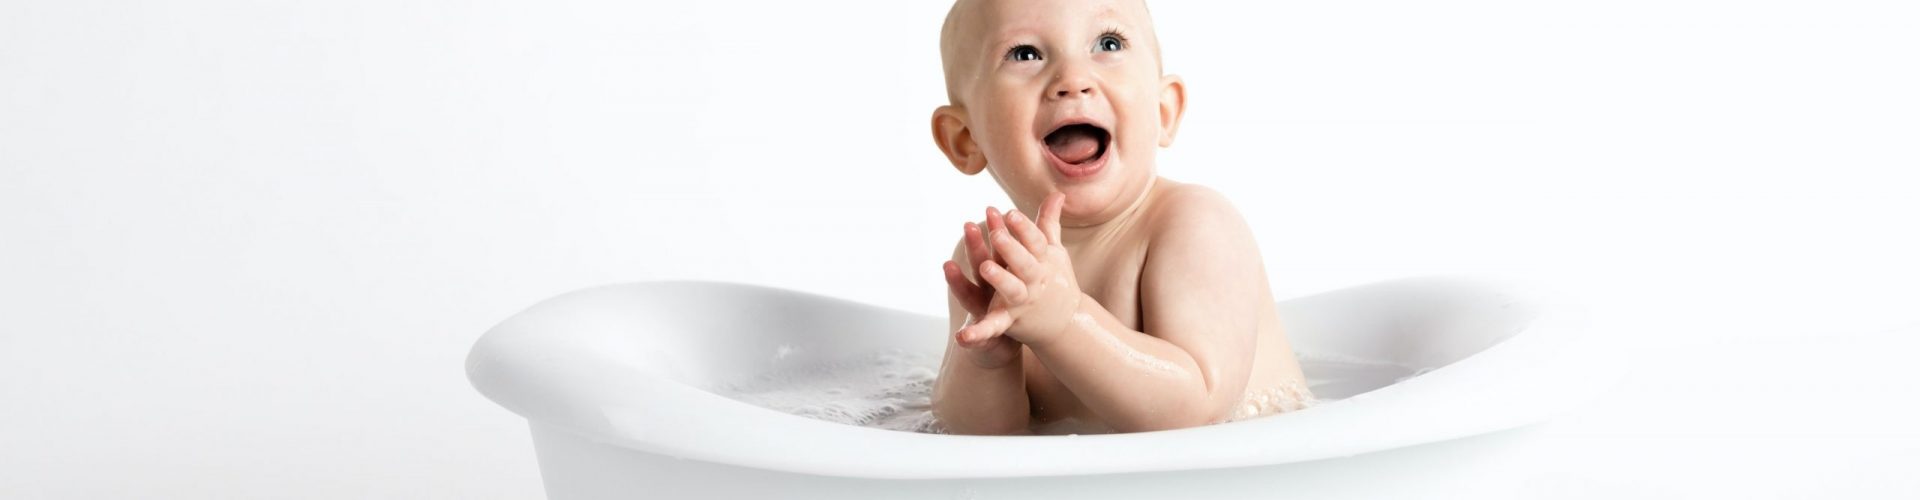 Un Nouveau Pas, accompagnement à la parentalité Vannes⎮le bain